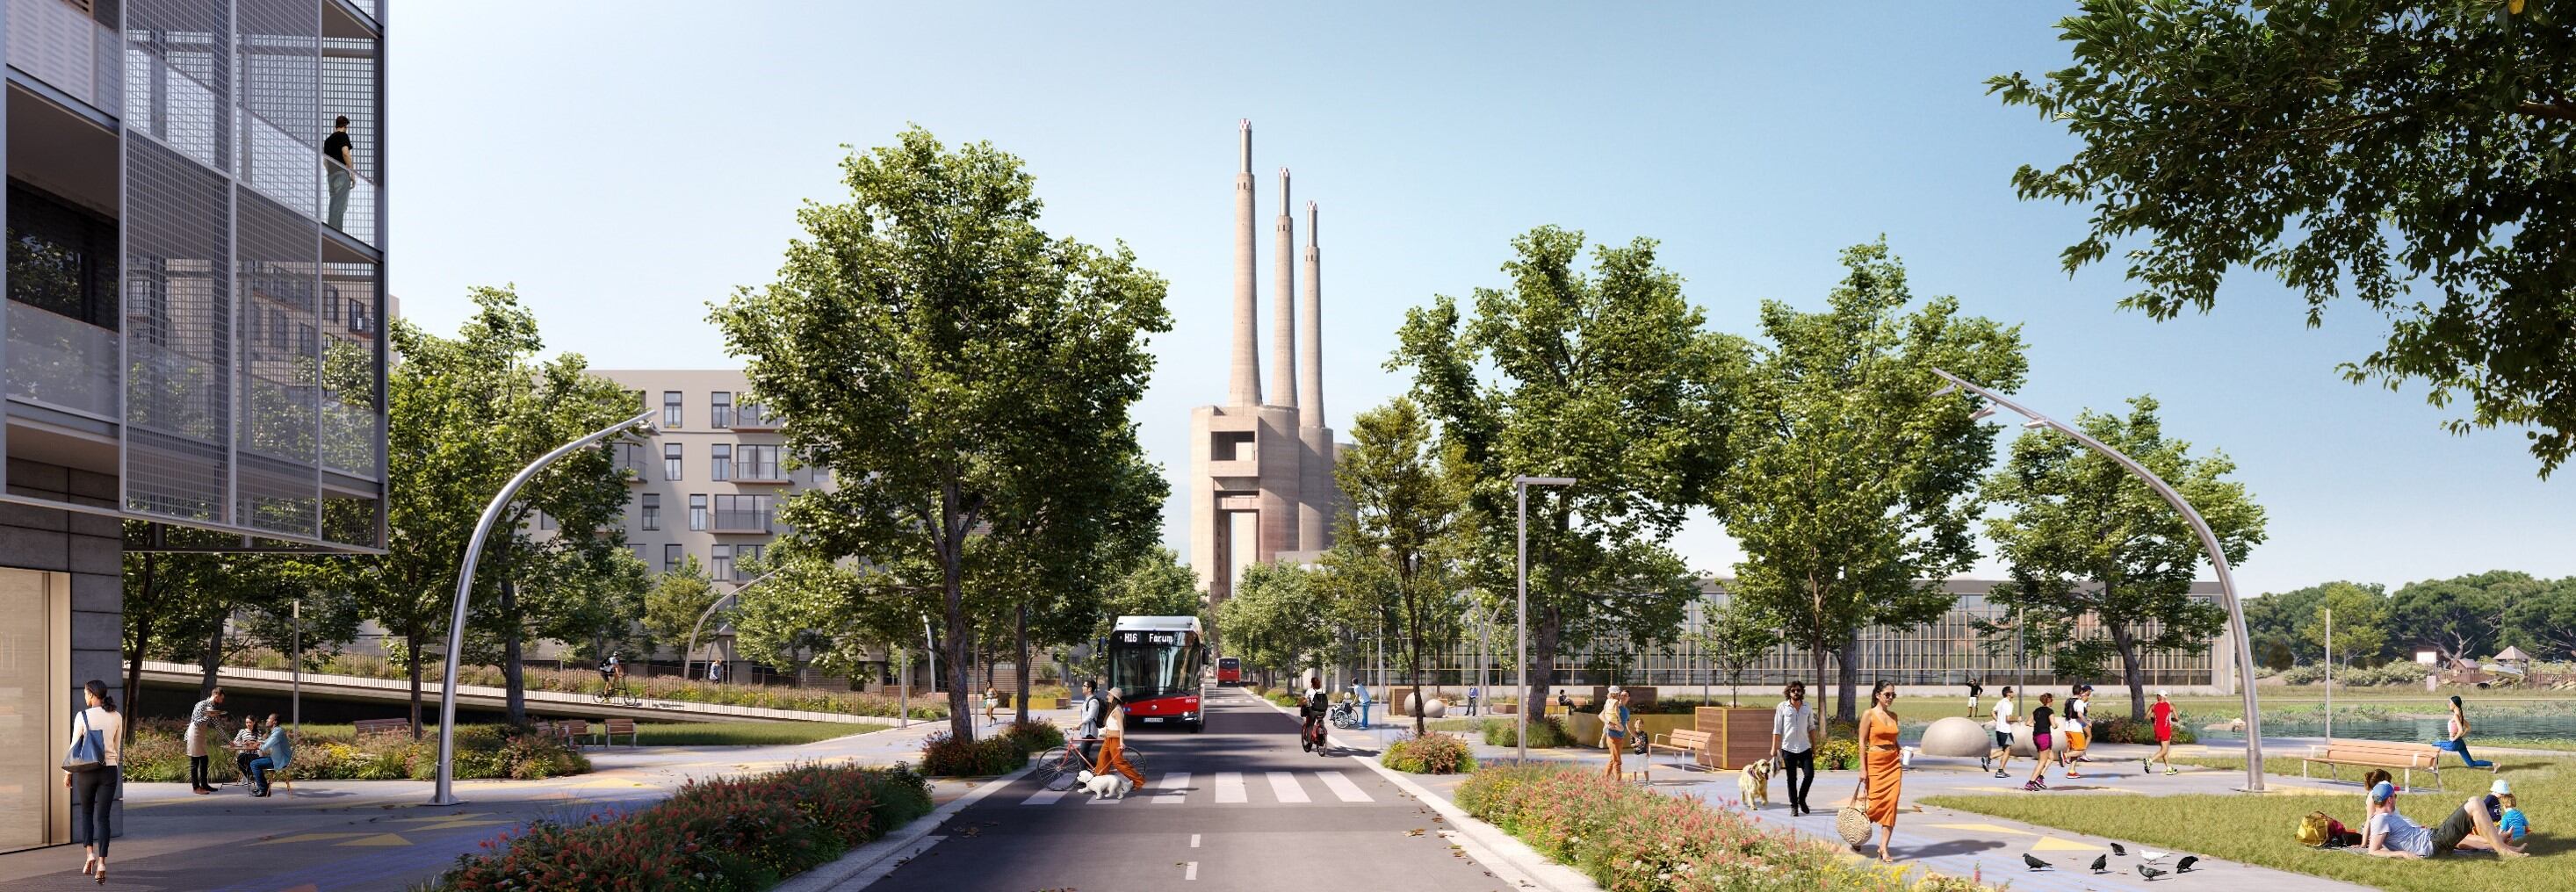 Imagen virtual de la futura urbanización del ámbito de las Tres Chimeneas, con una calle entre las viviendas y el parque.